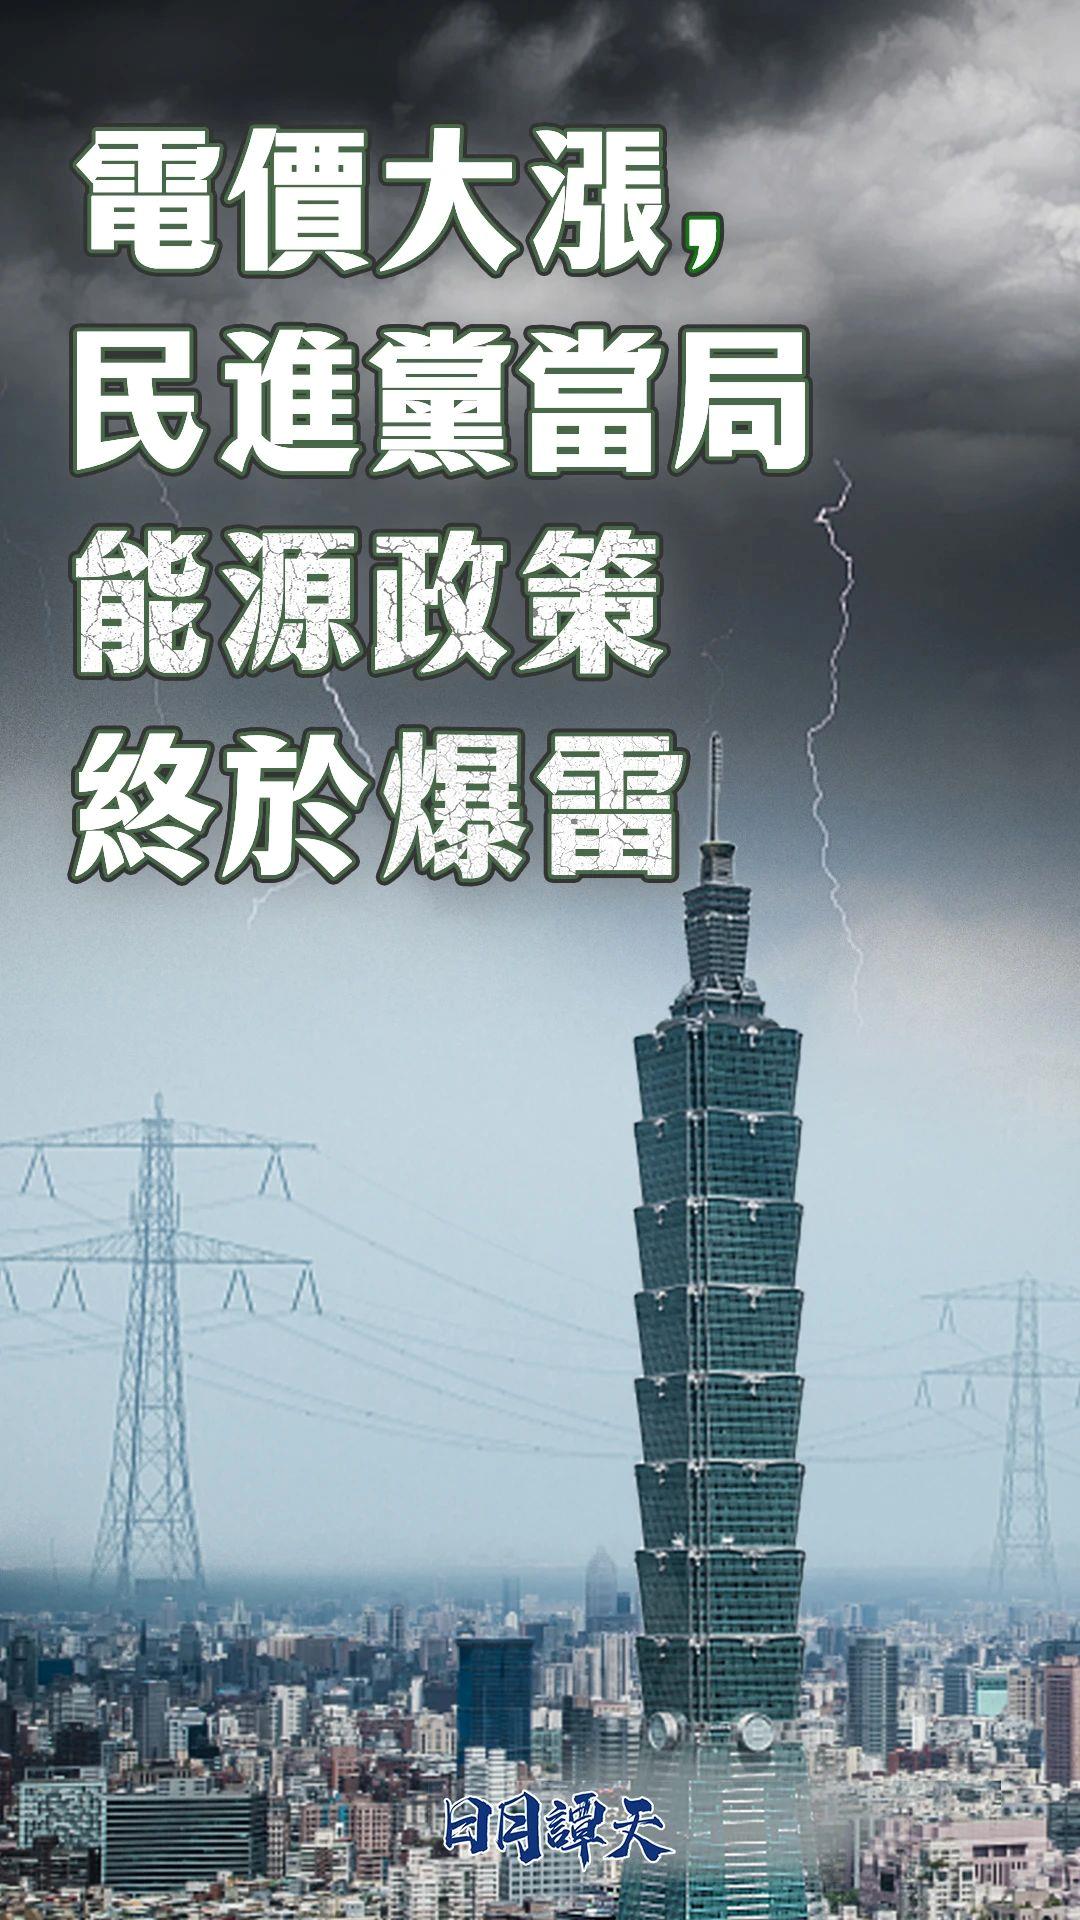 日月谭天丨电价大涨，民进党当局能源政策终于爆雷